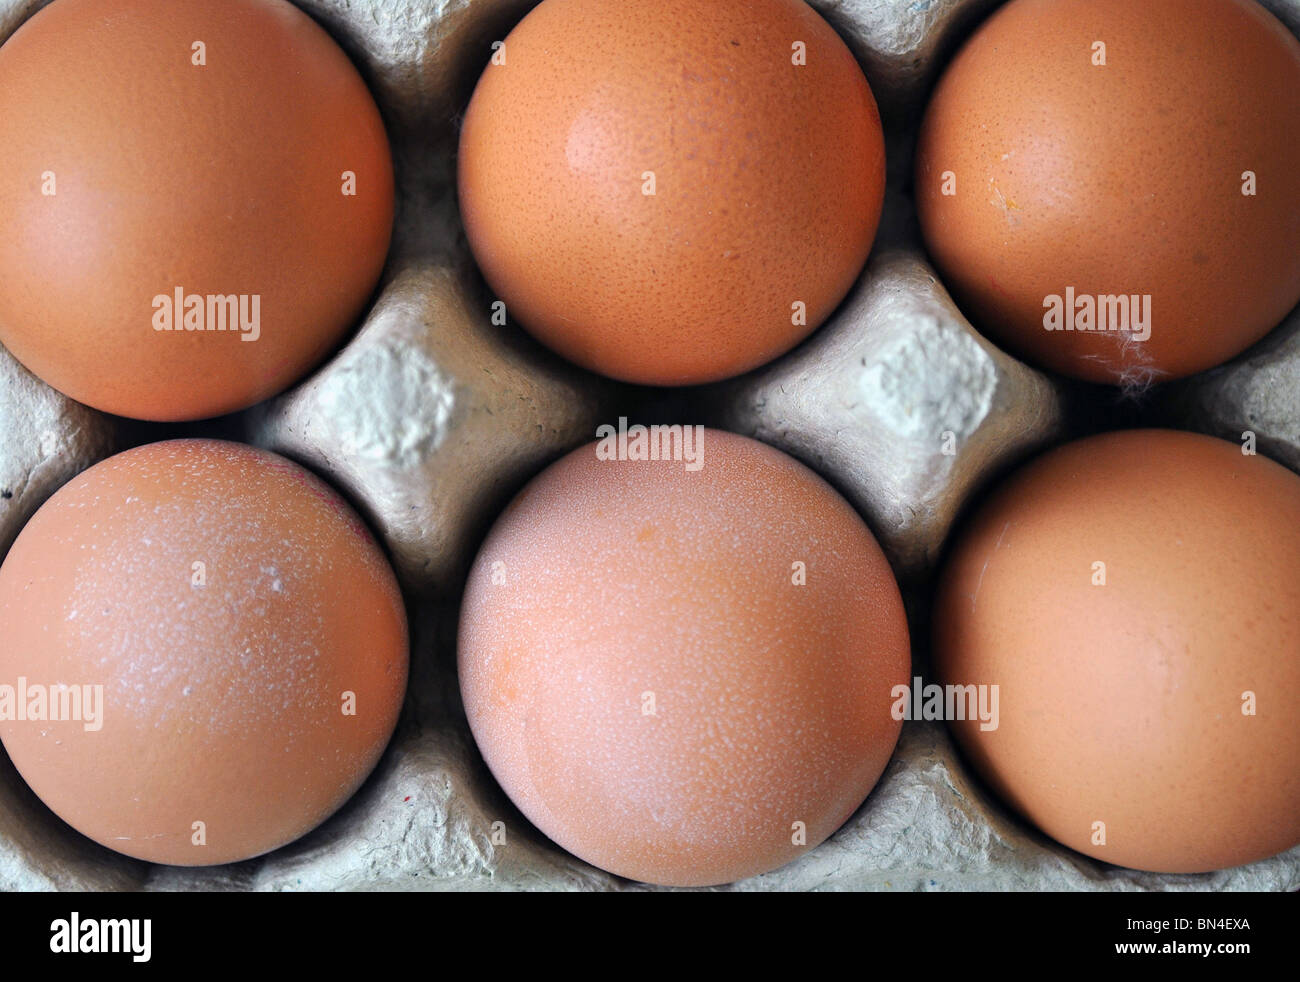 half a dozen eggs in a egg box Stock Photo